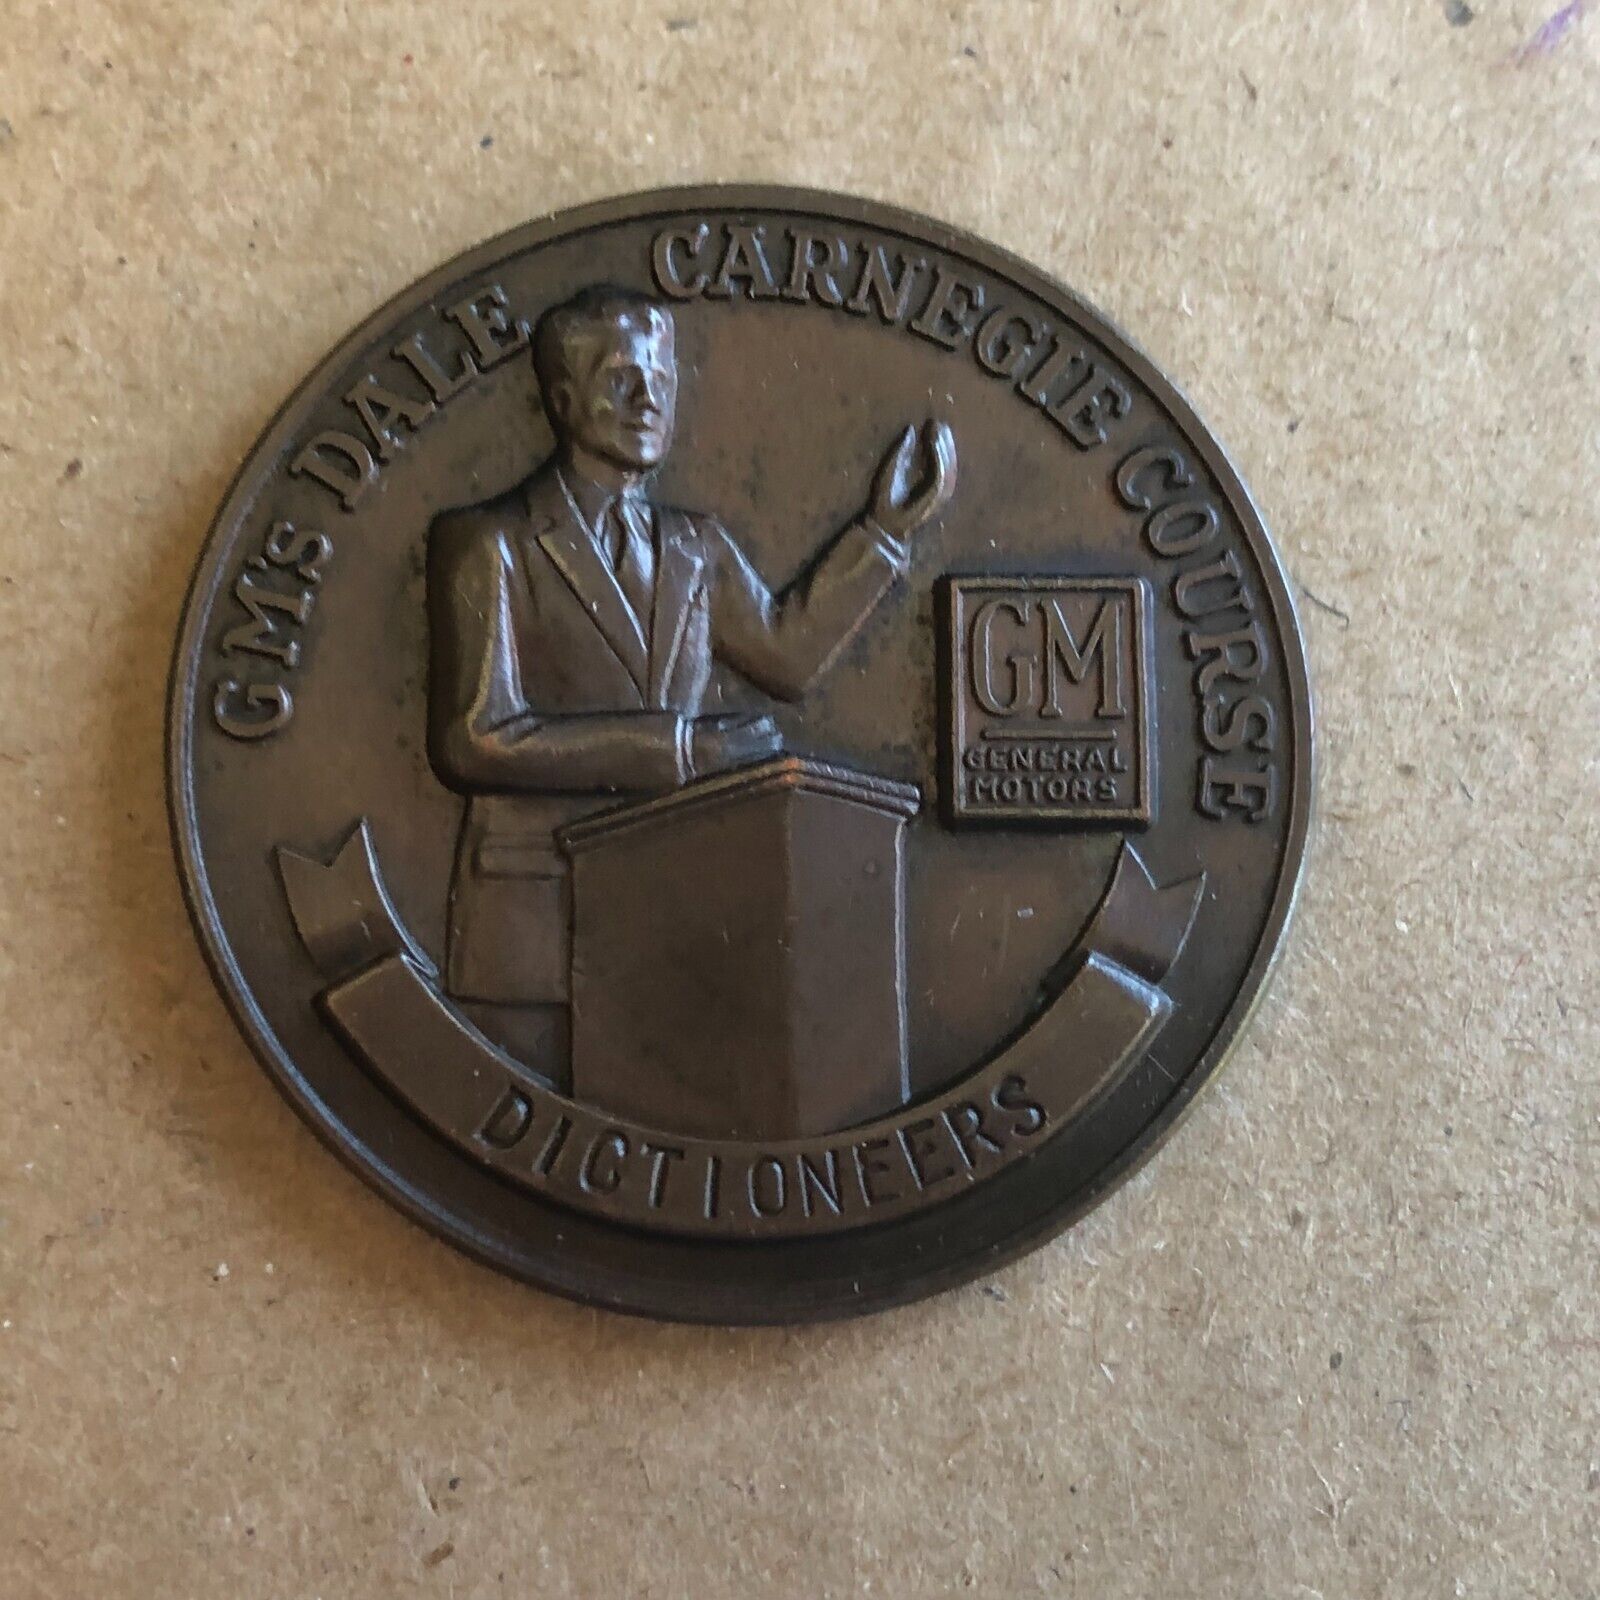 Dale Carnegie Dictioneers Award Medal To D.R. Waters Vtg 1953 GM General Motors